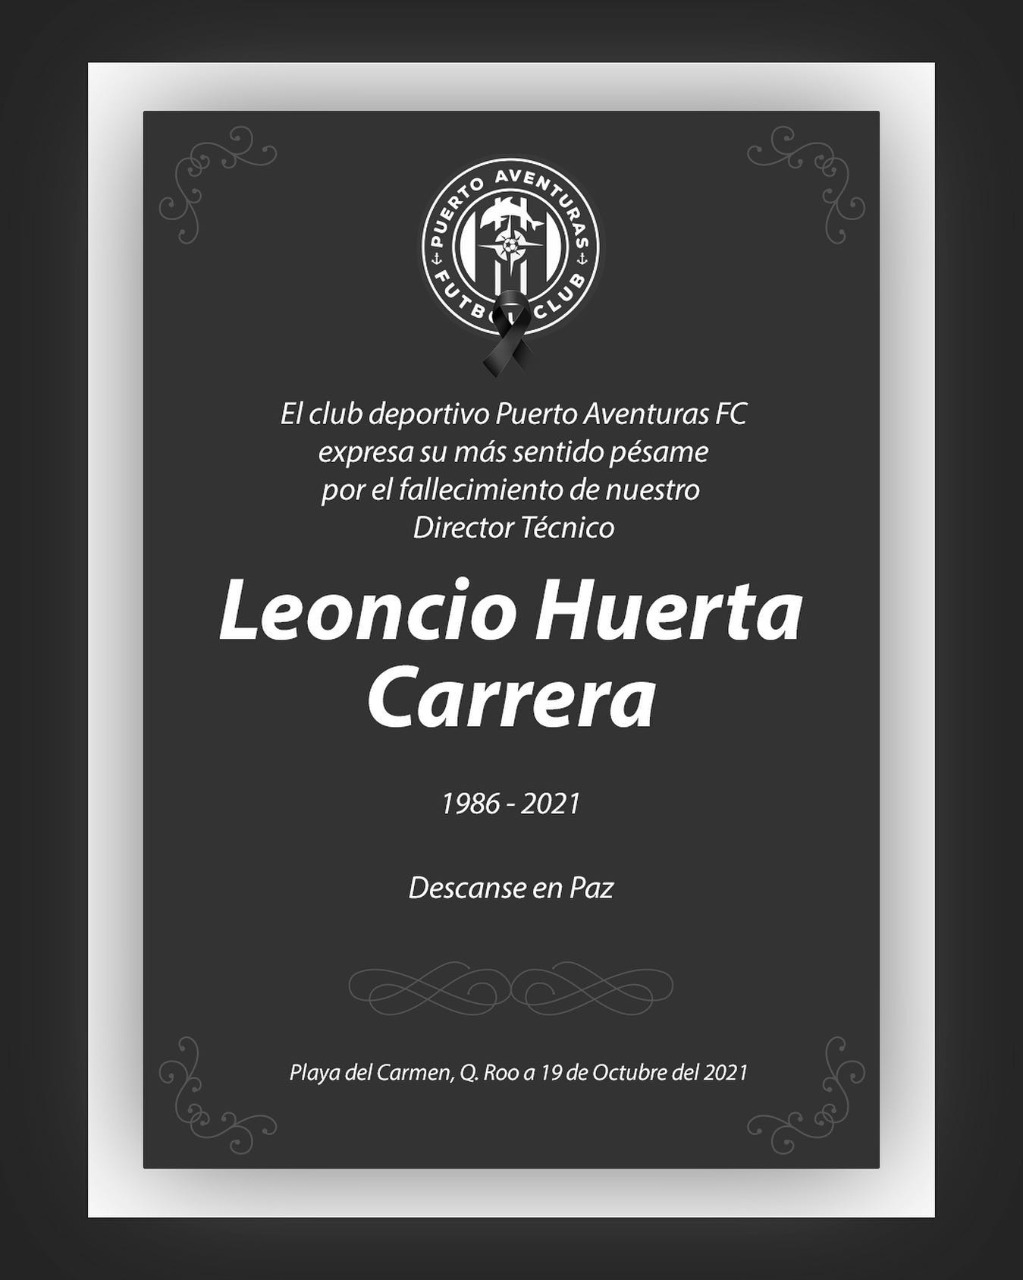 Directiva, cuerpo técnico y jugadores del Club Puerto Aventuras F.C., lamentaron, en un comunicado, el fallecimiento de Leoncio Huerta Carrera.